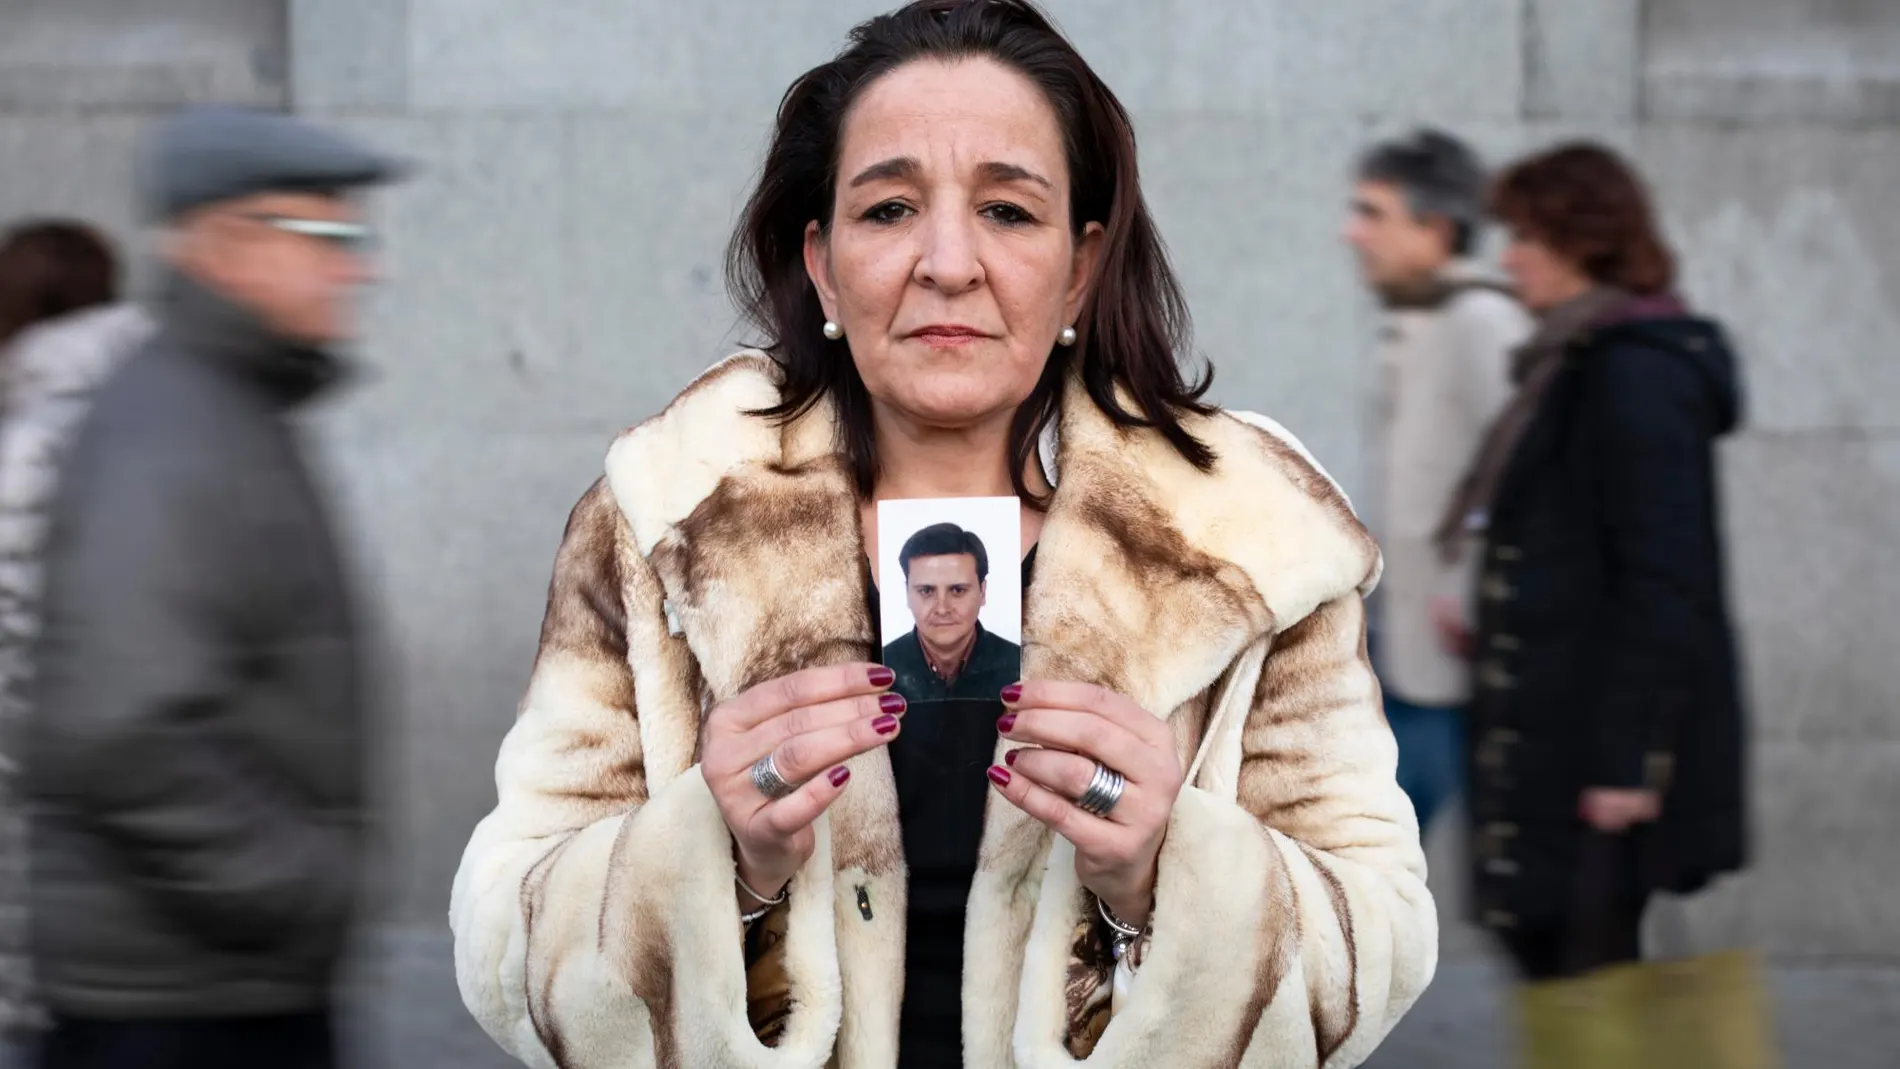 Milagros perdió a su marido en los fatidicos atentados del 11-M